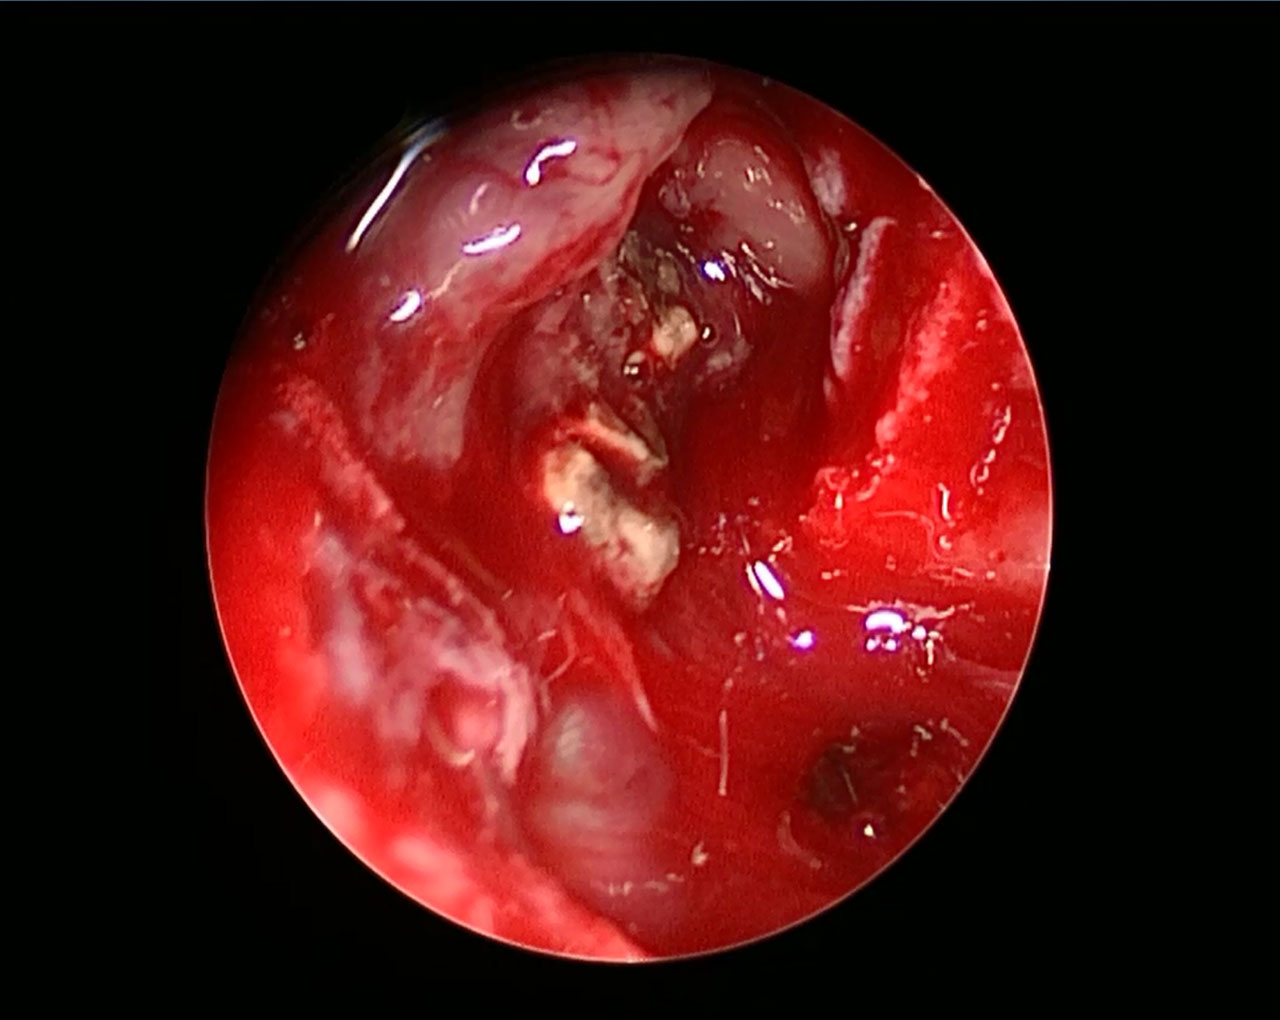 Abb. 4: Das intraoperative Bild zeigt den Blick in den Sinus maxillaris rechts, gefüllt mit grau-grünlichem Fremdmaterial und entzündlich veränderter Nasennebenhöhlenschleimhaut.